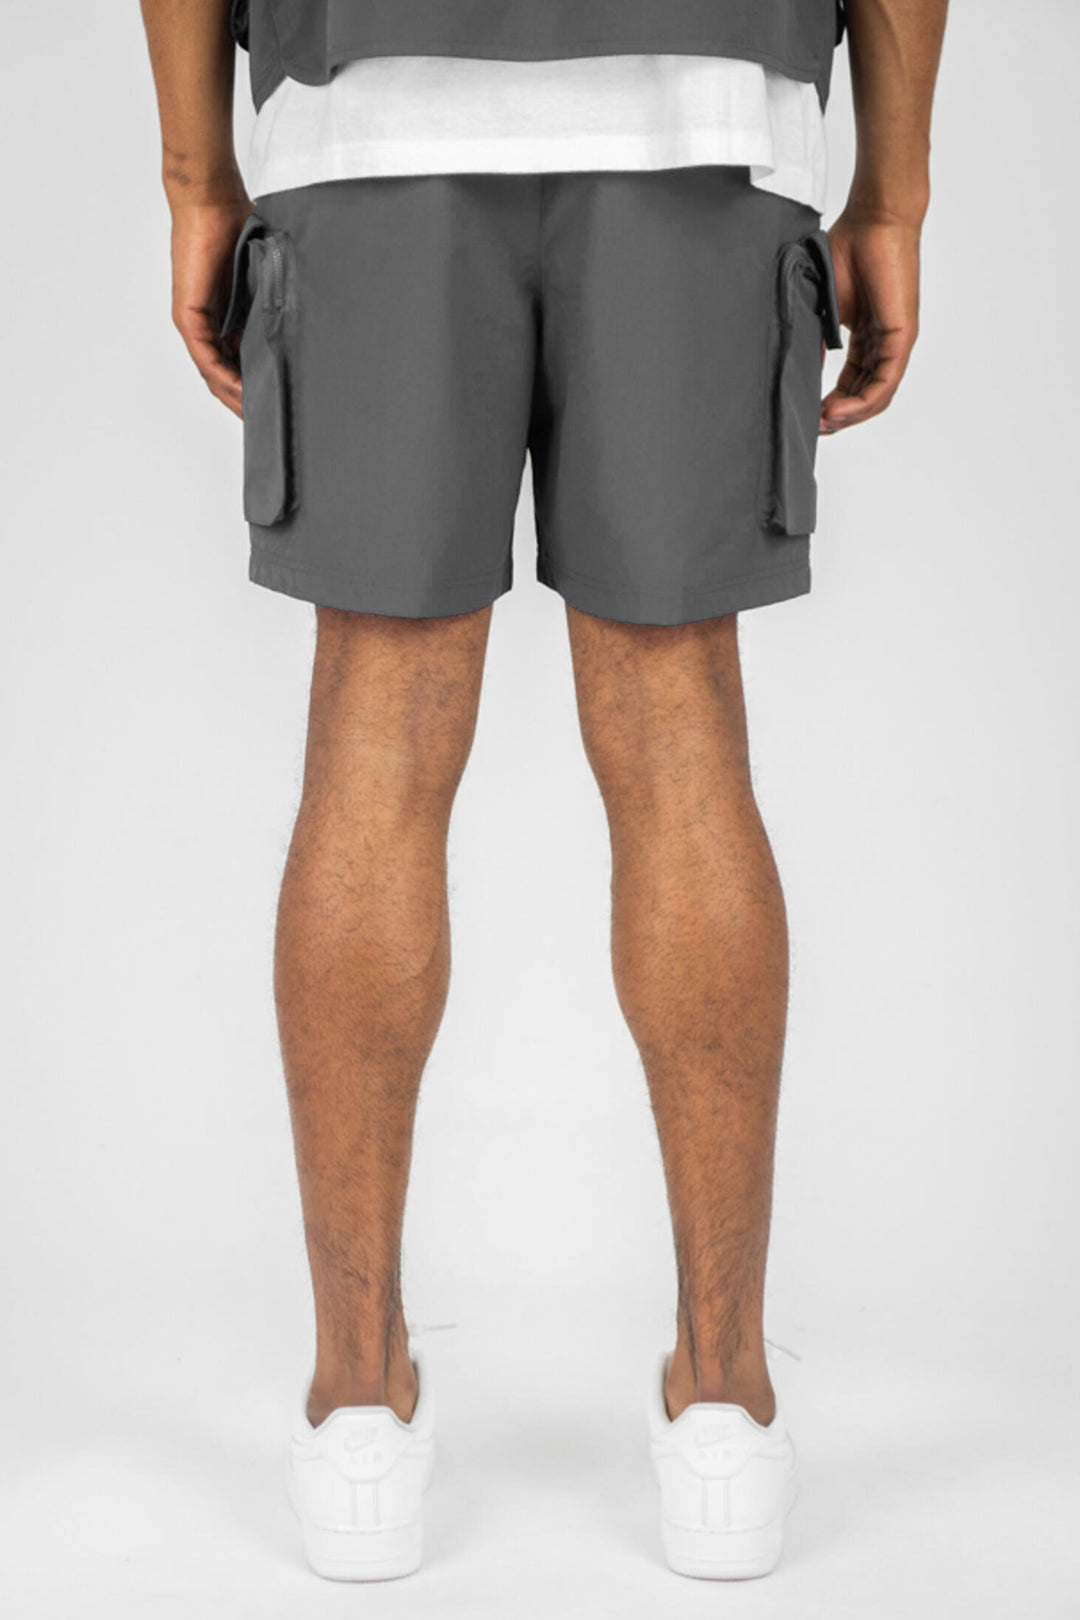 Cargo Pocket Shorts (Grey) (141-910) - Zamage